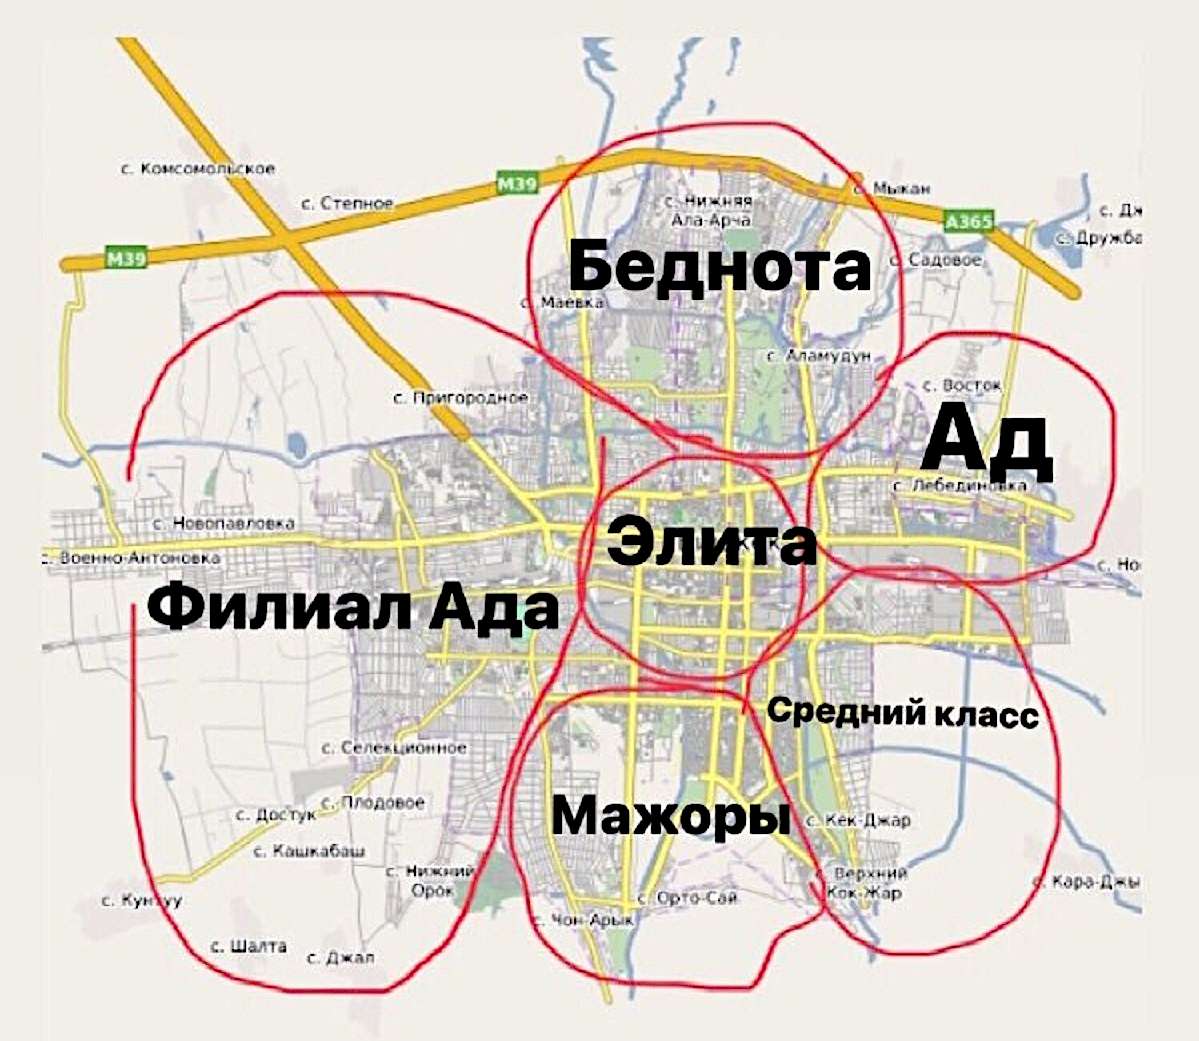 Эта карта гуляла по социальным сетям Бишкека в 2019